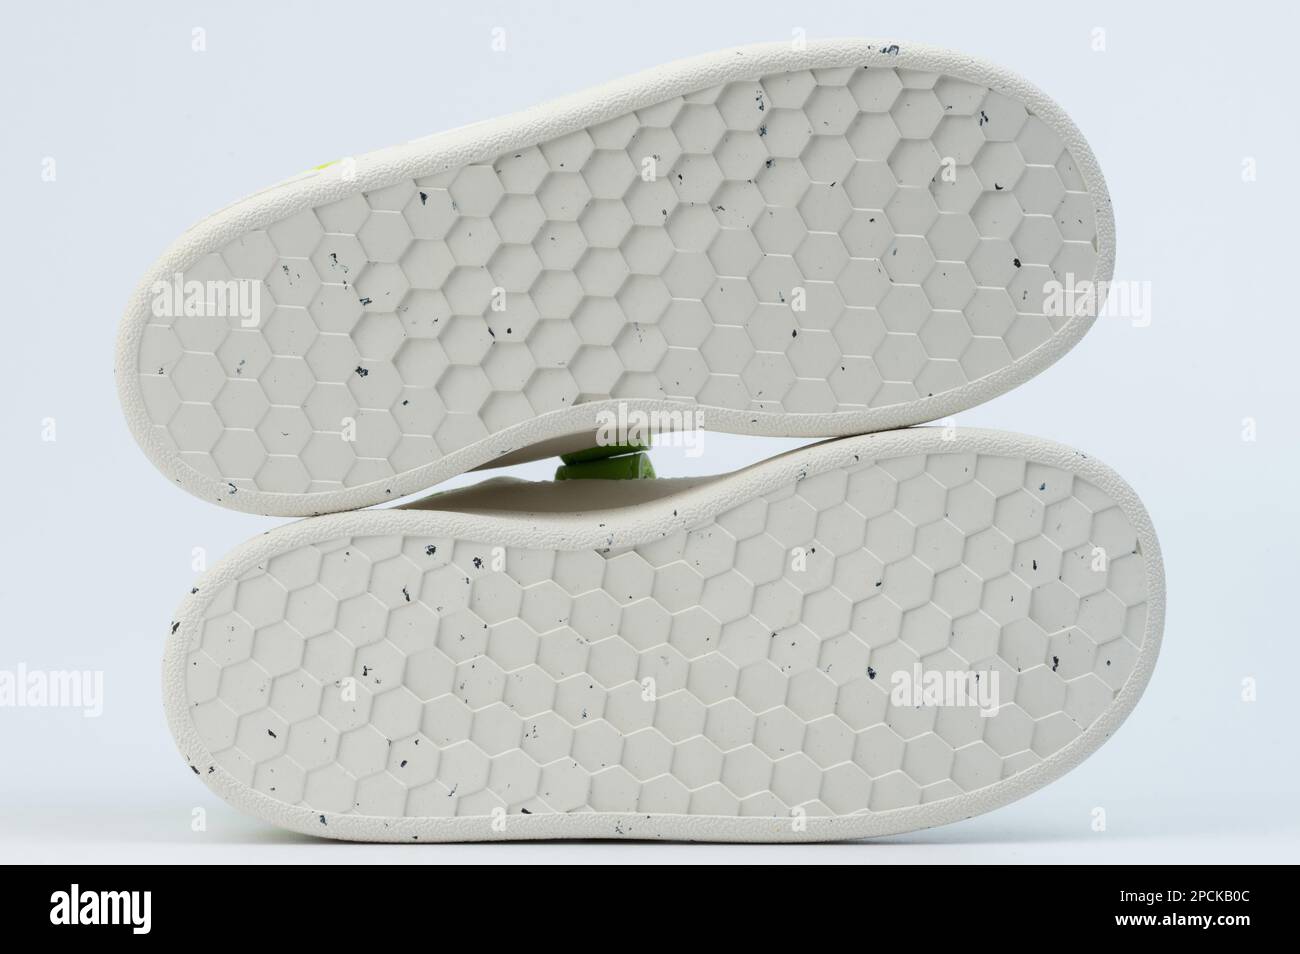 Par de suela de zapato blanco inferior aislado en fondo de estudio Foto de stock